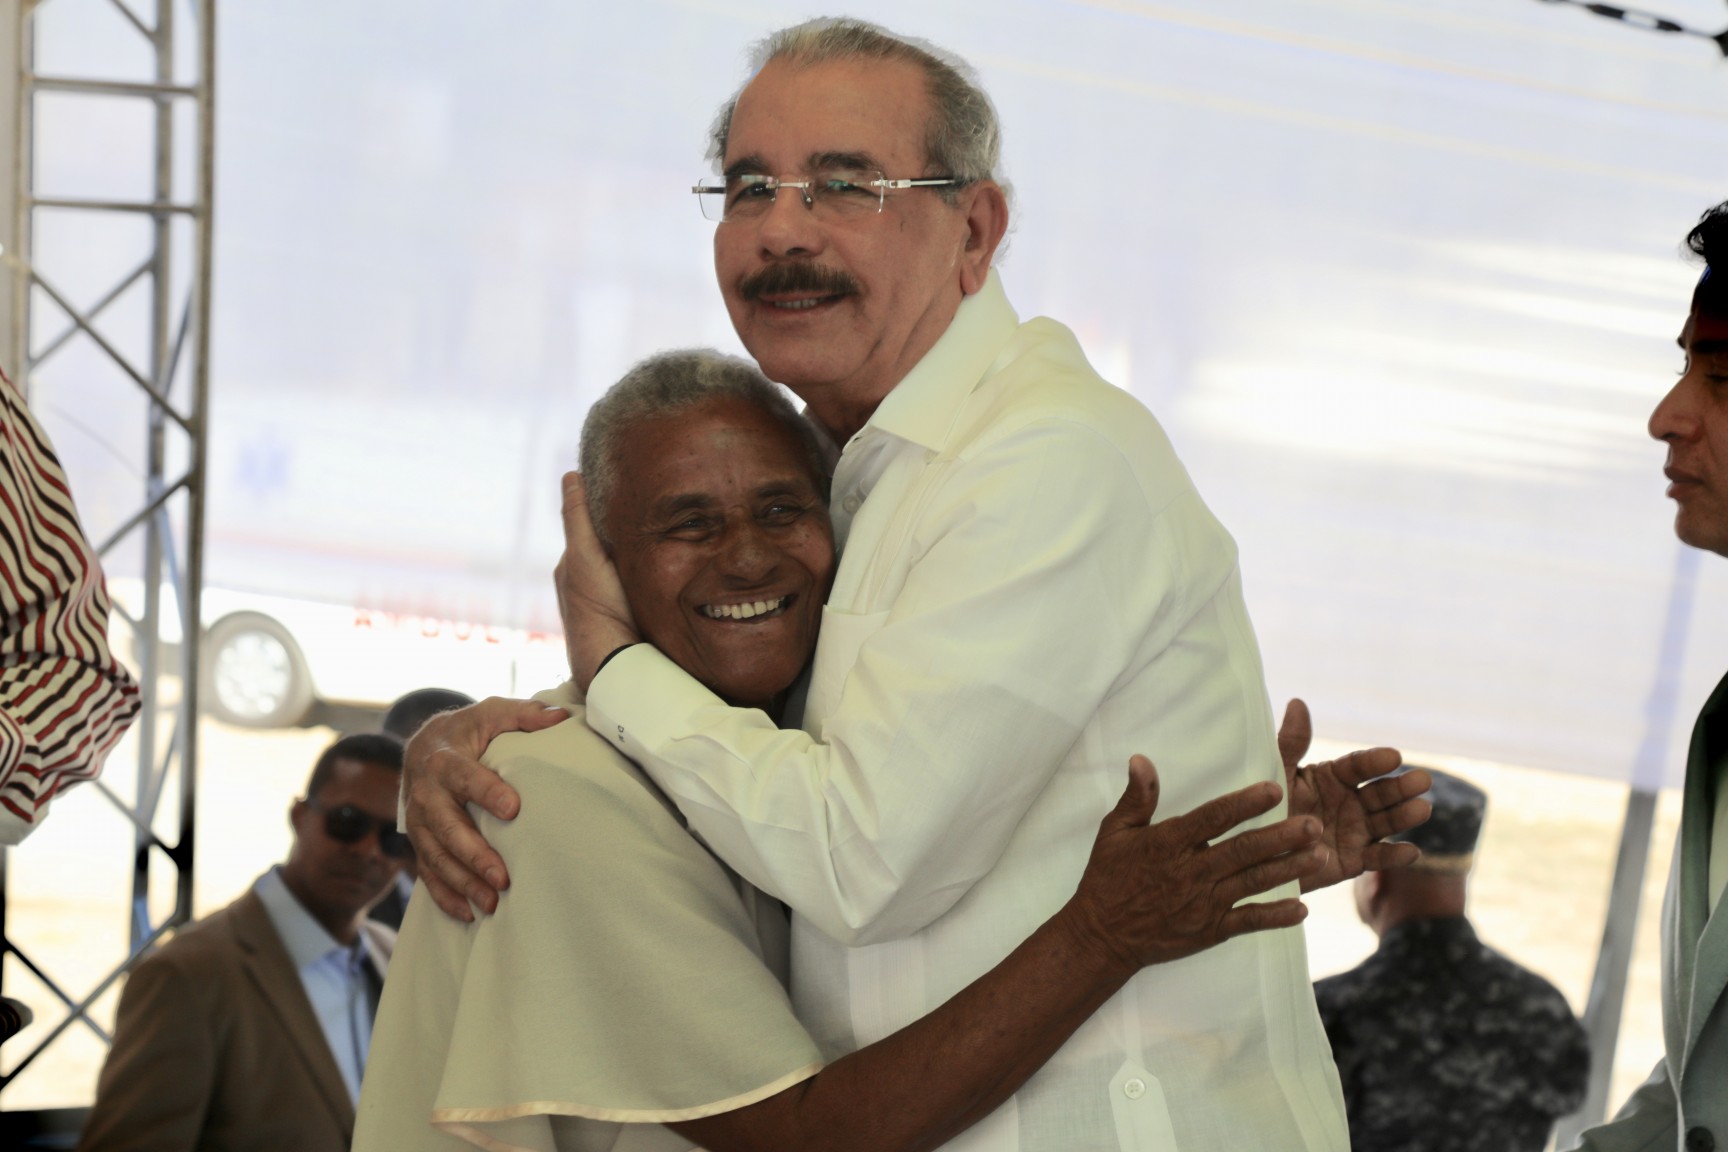 REPÚBLICA DOMINICANA: Presidente Danilo Medina entrega 1,478 títulos definitivos de propiedad a parceleros y residentes de 5 comunidades de Azua